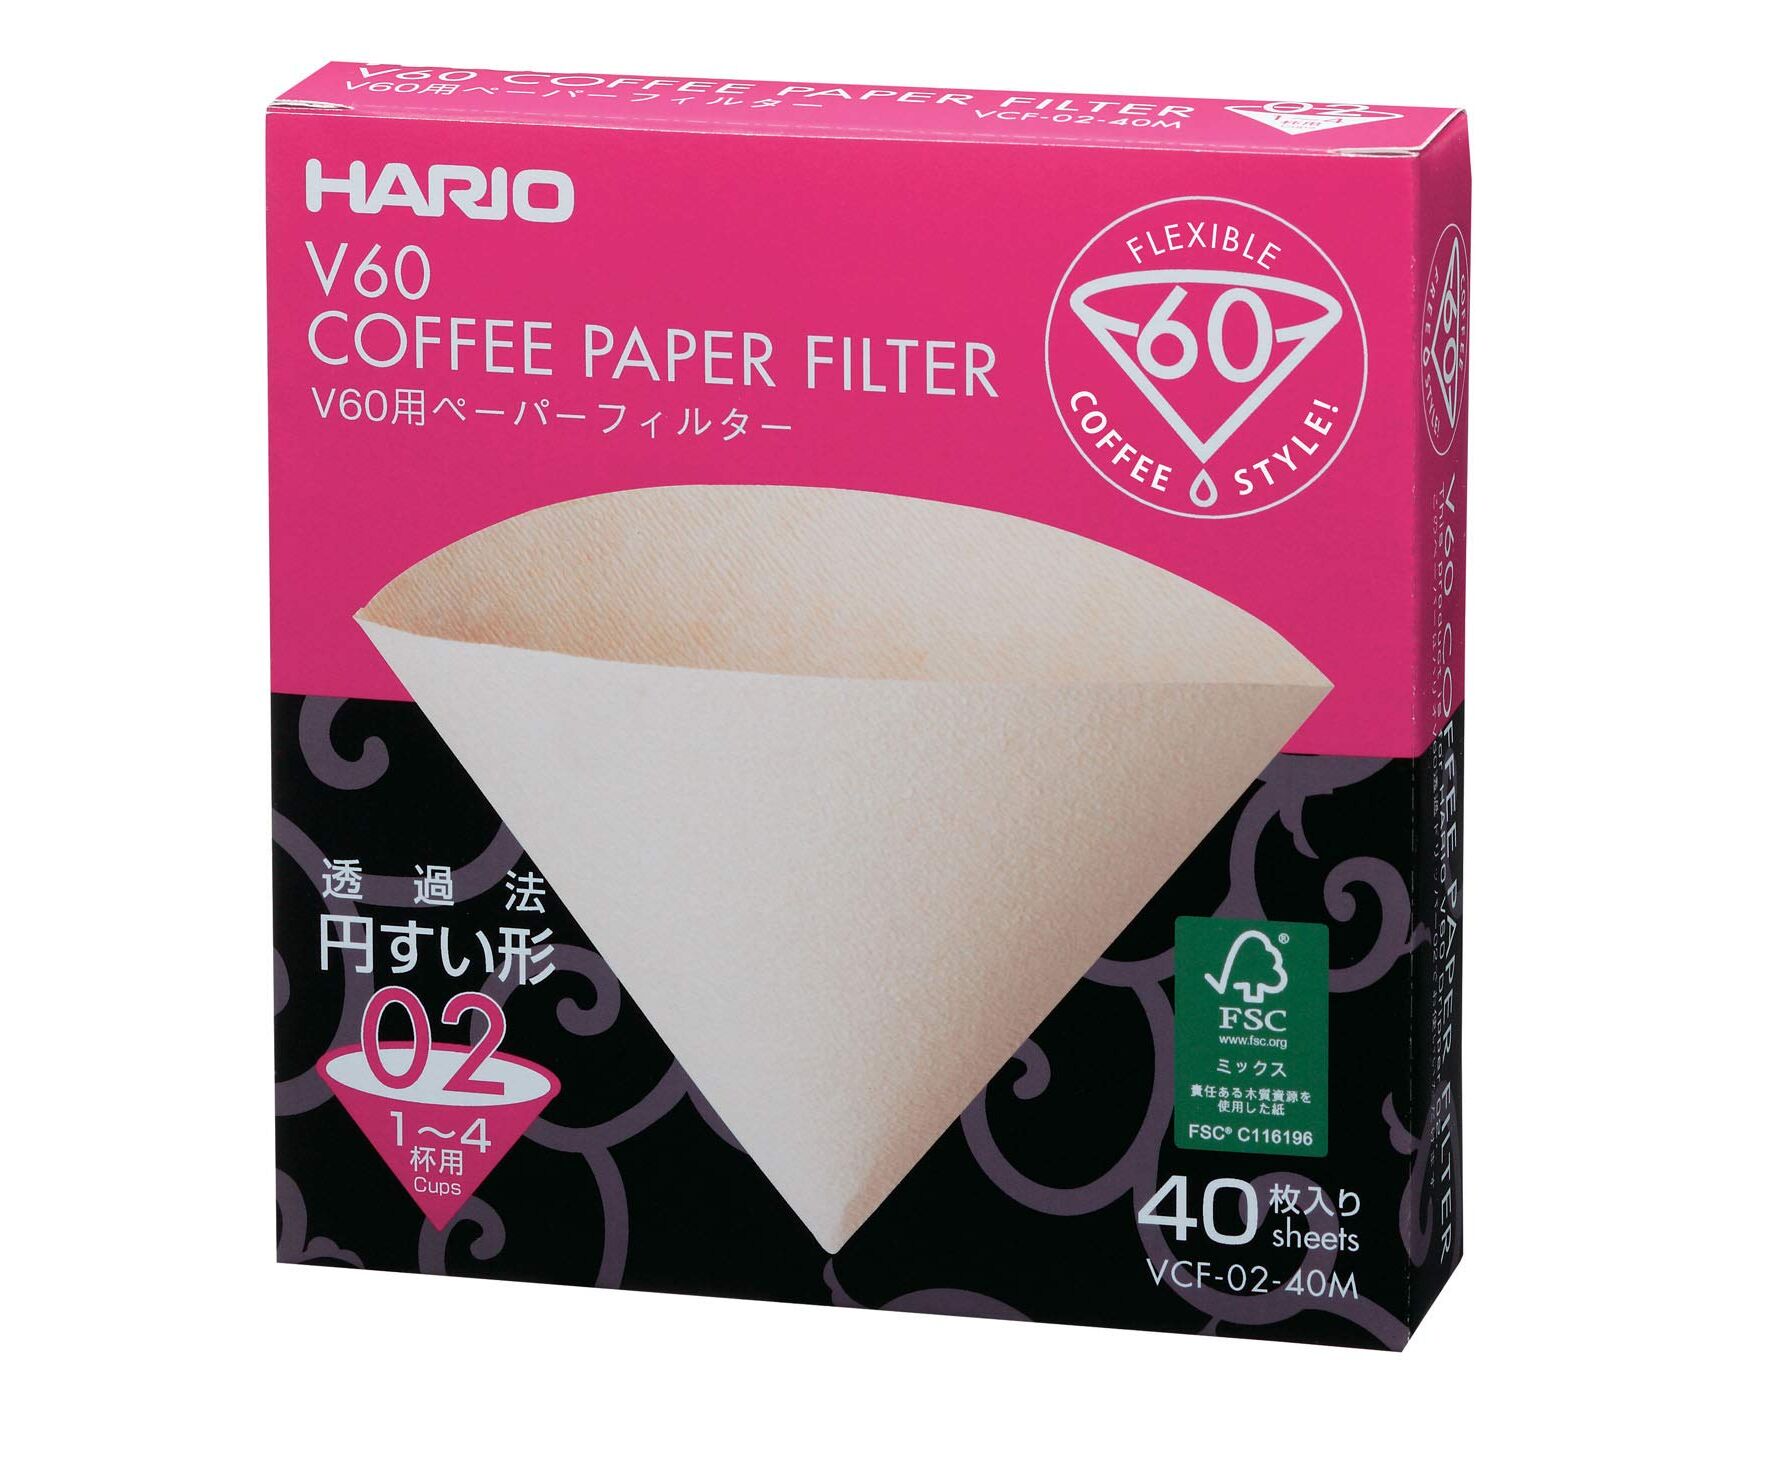 Бумажные фильтры для воды. Hario v60. Hario VCF-02-100w. Воронка Hario v60. Hario v60 №2 фильтры.